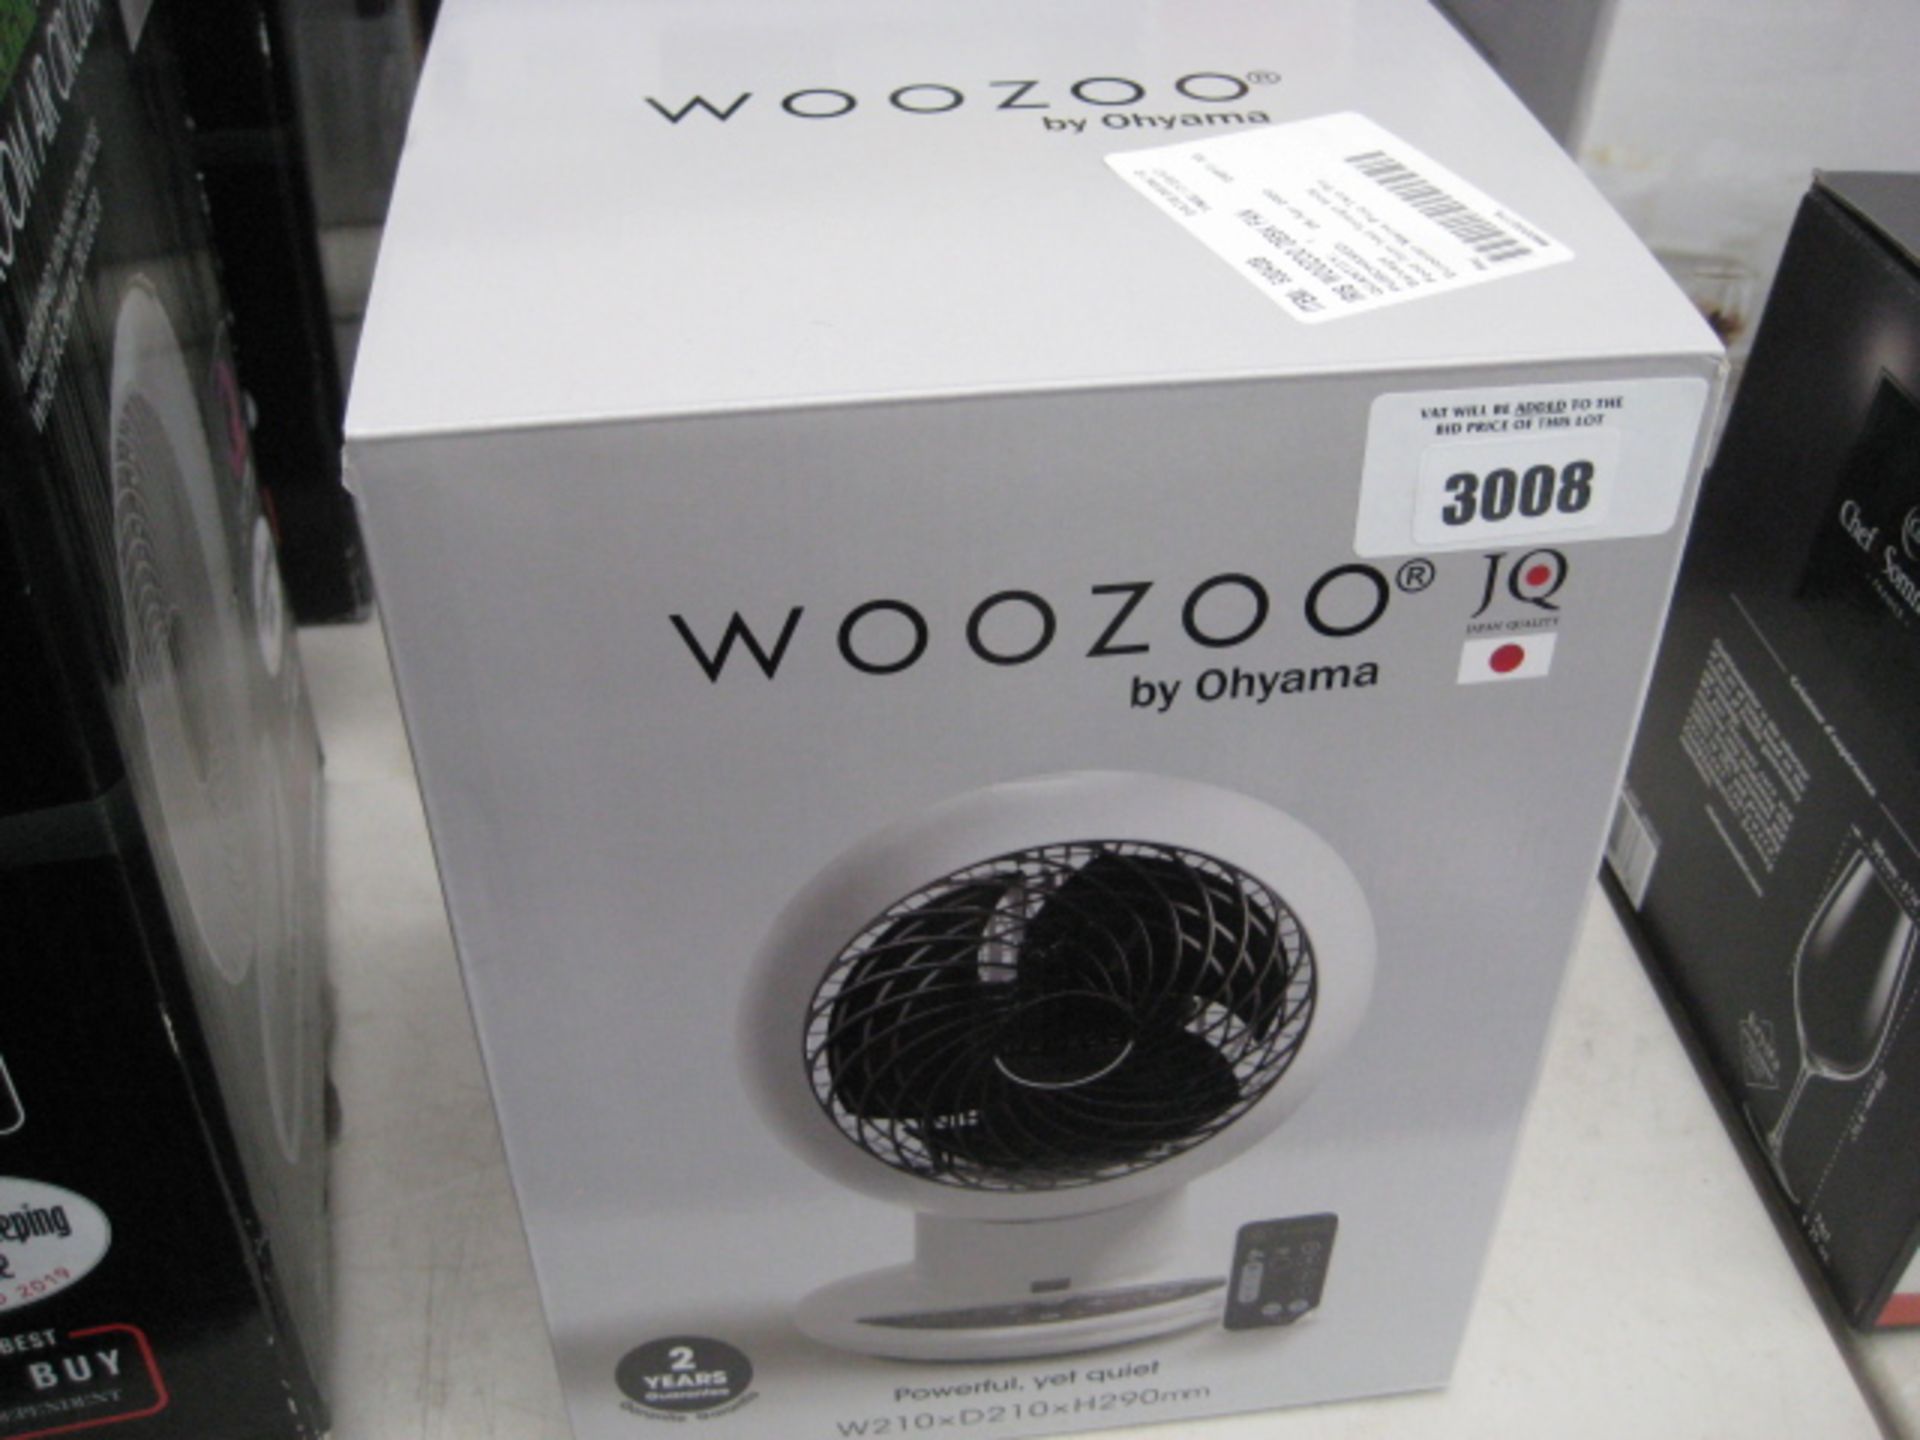 Boxed Woozoo desktop fan